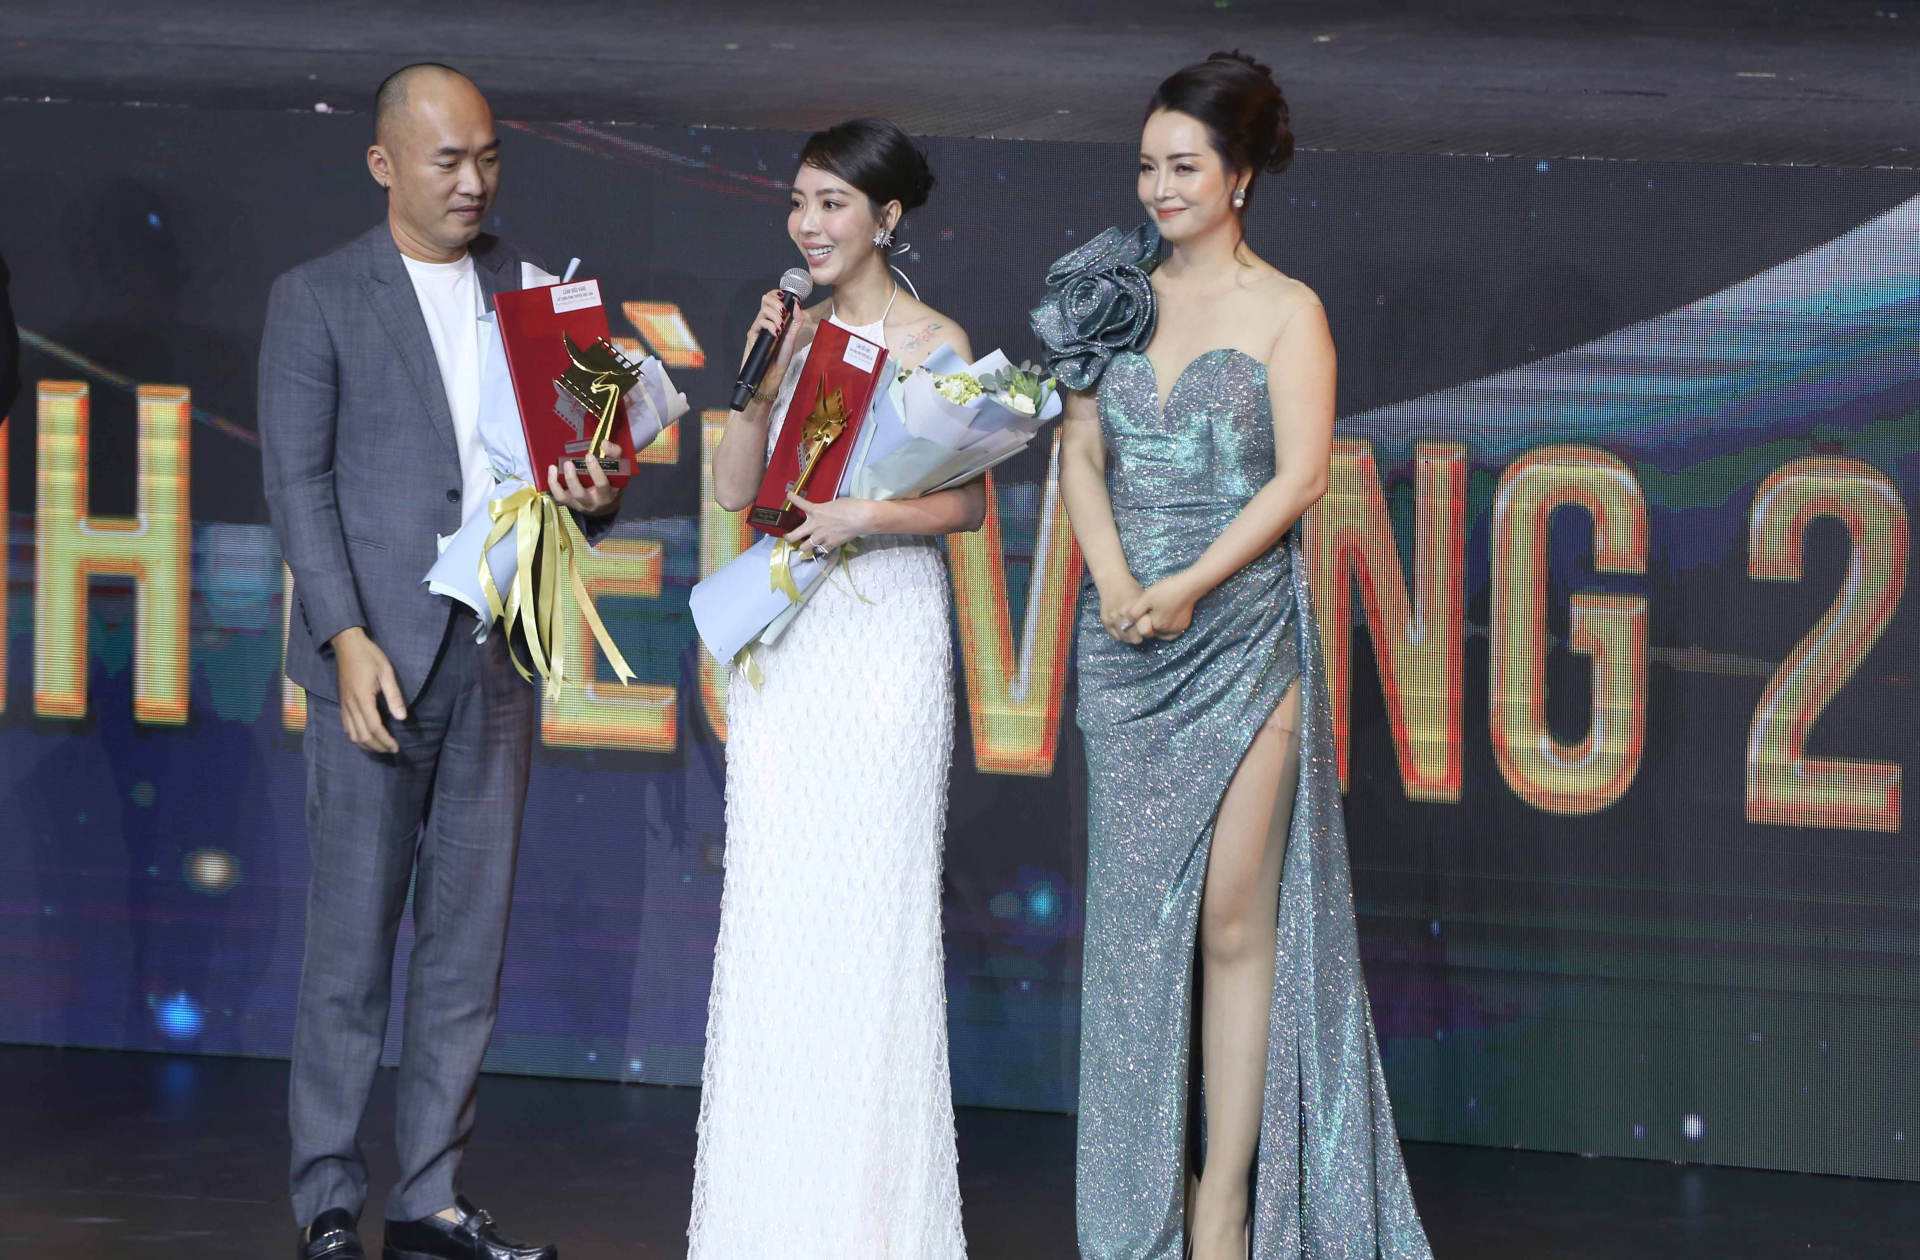 Phát biểu sau khi được vinh danh ở hạng mục Nữ diễn viên phim truyện điện ảnh xuất sắc nhất, Thu Trang cho biết chị rất xúc động.